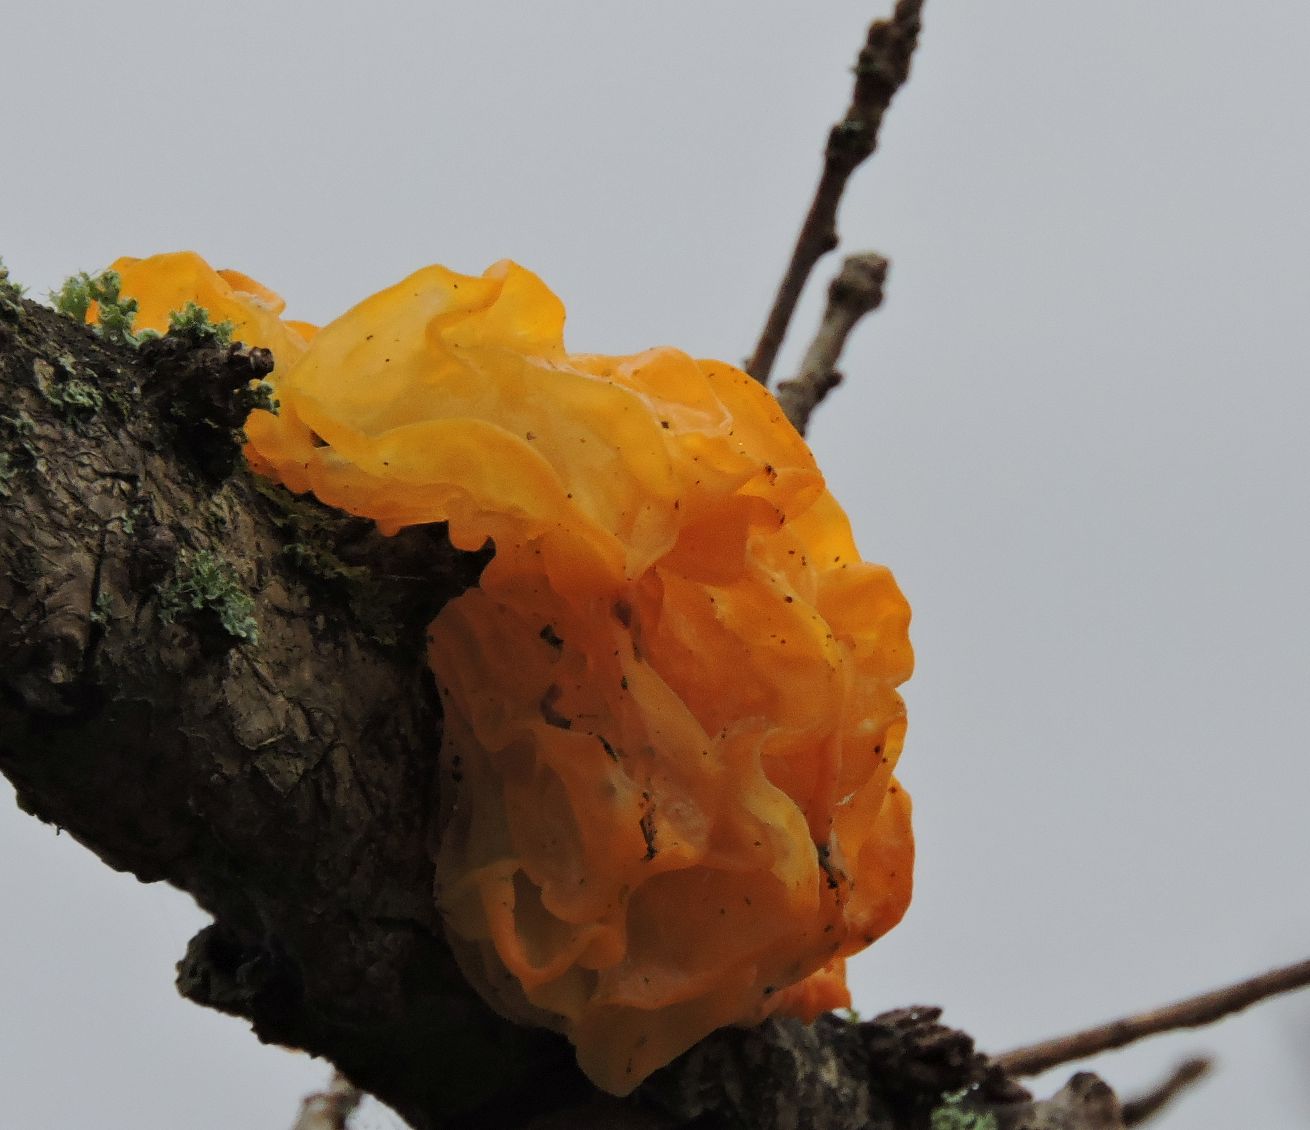 Yellow Brain Fungus